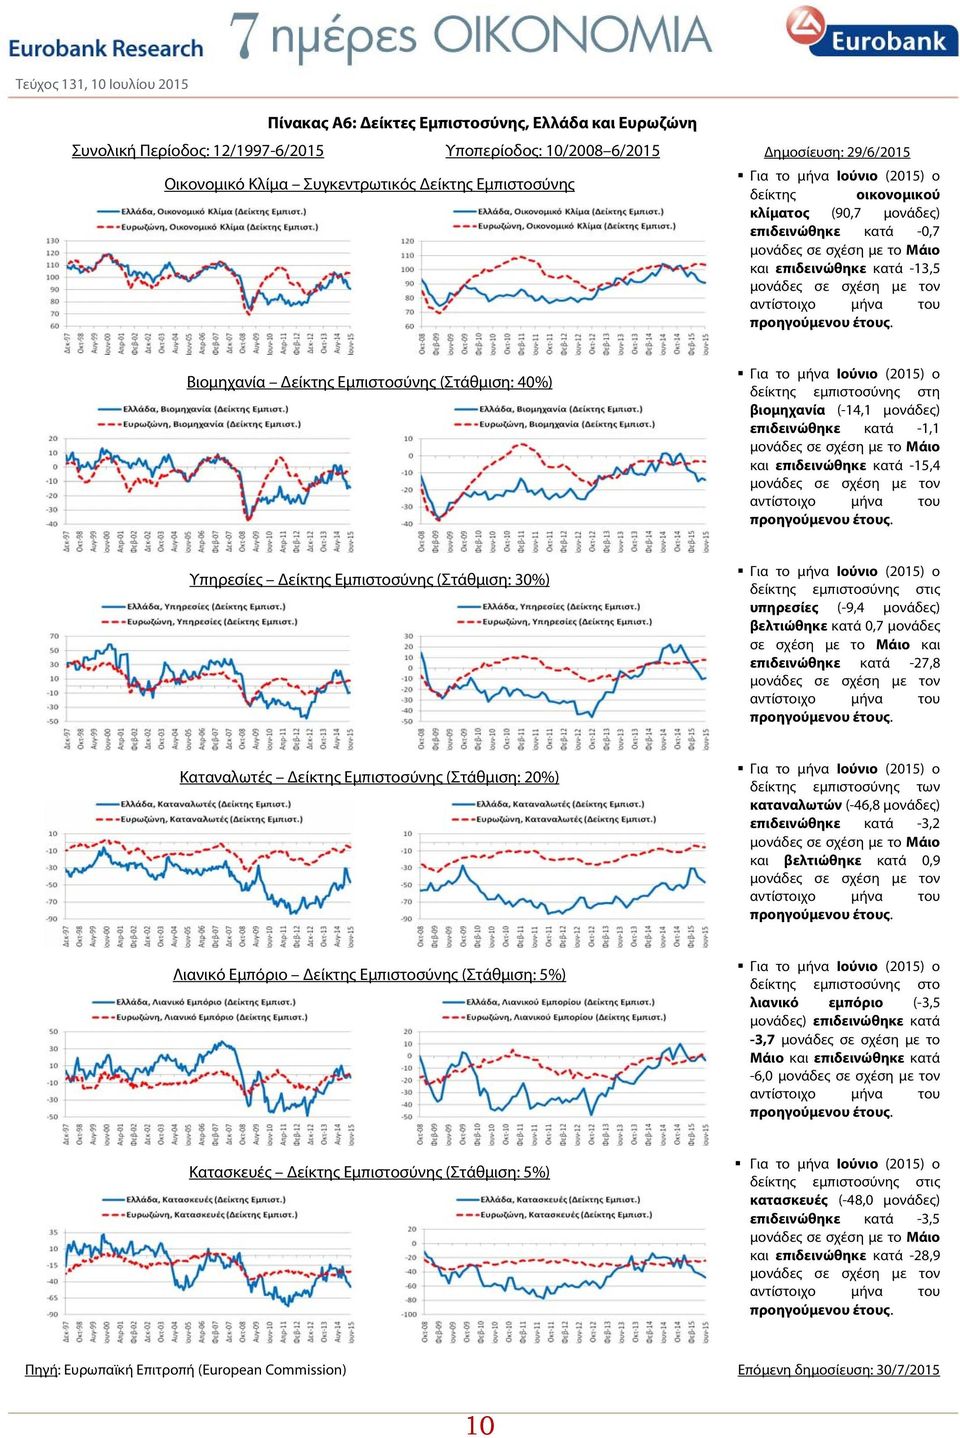 Βιομηχανία Δείκτης Εμπιστοσύνης (Στάθμιση: 40%) Για το μήνα Ιούνιο (2015) ο δείκτης εμπιστοσύνης στη βιομηχανία (-14,1 μονάδες) επιδεινώθηκε κατά -1,1 μονάδες σε σχέση με το Μάιο επιδεινώθηκε κατά